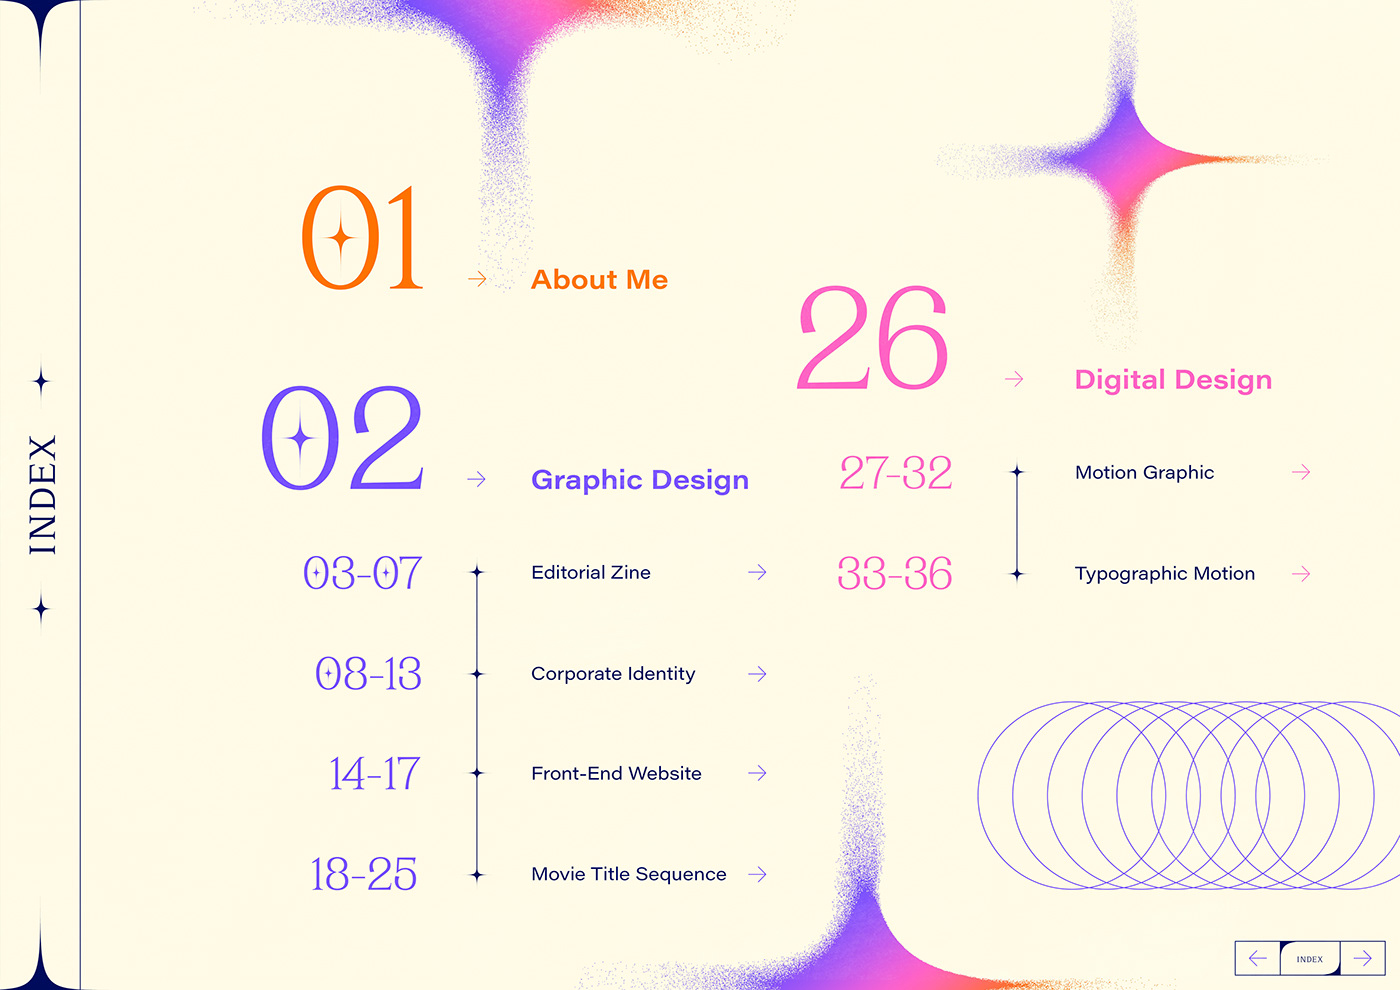 animation  app design Corporate Identity digital design editorial design  graphic design  motion graphics  portfolio ux/ui design Web Design 